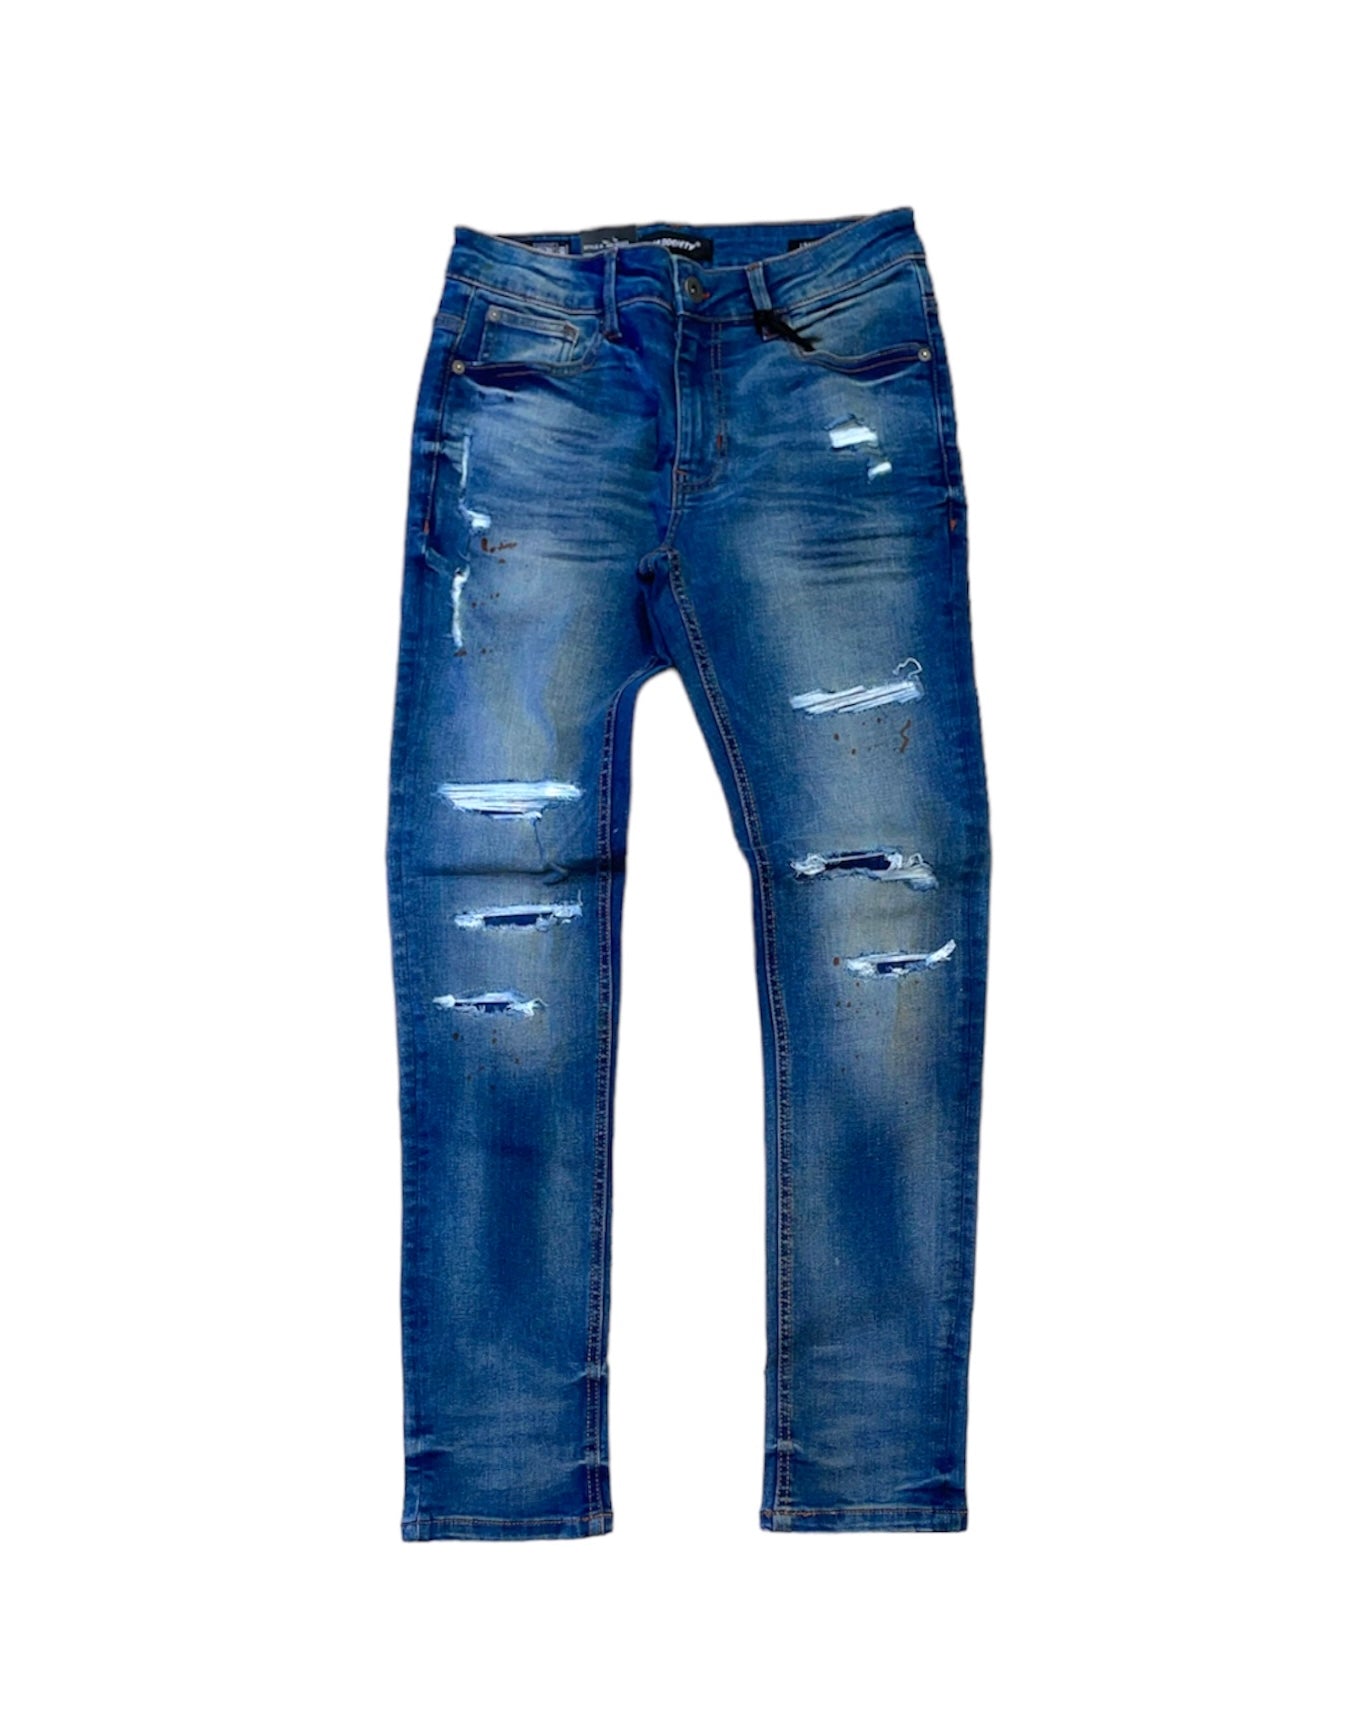 Rip & Repaired Denim Jeans